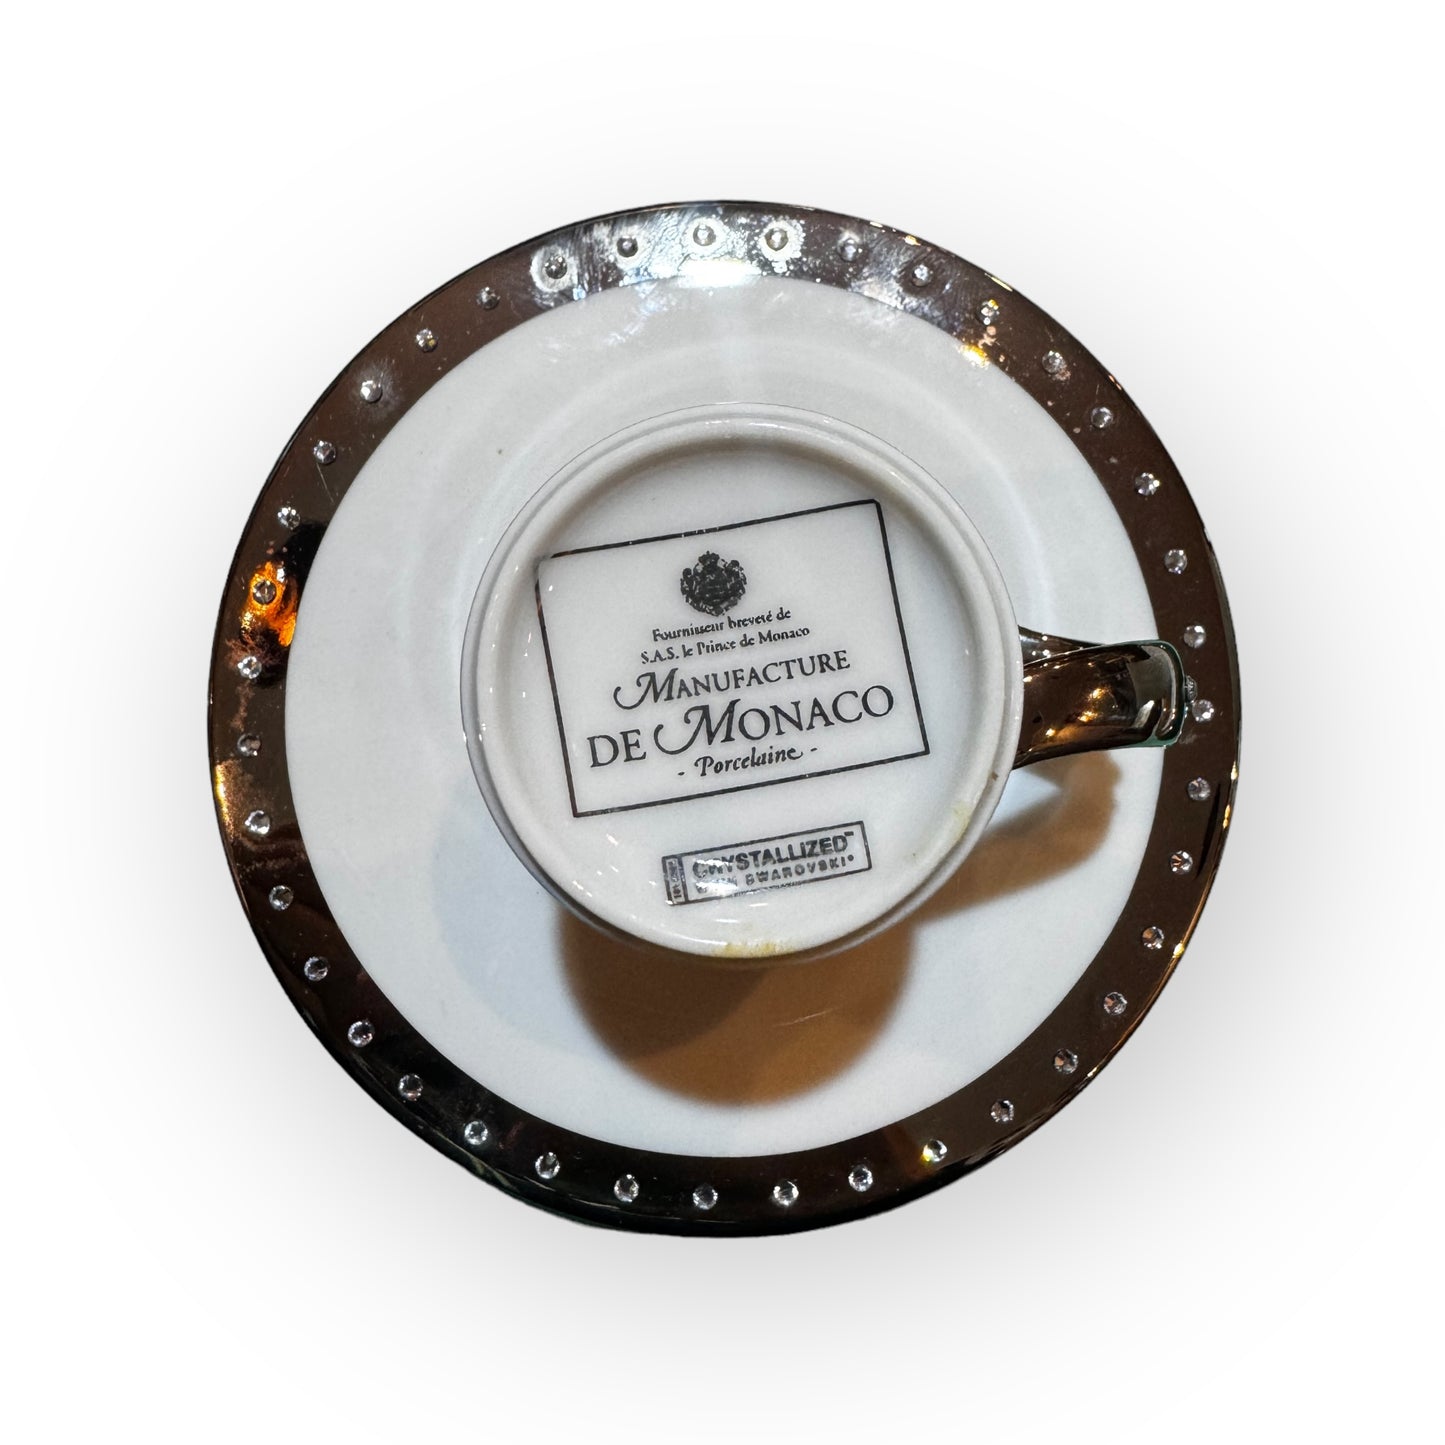 Coppia di tazzine da caffè manifatture de Monaco con i brillantini